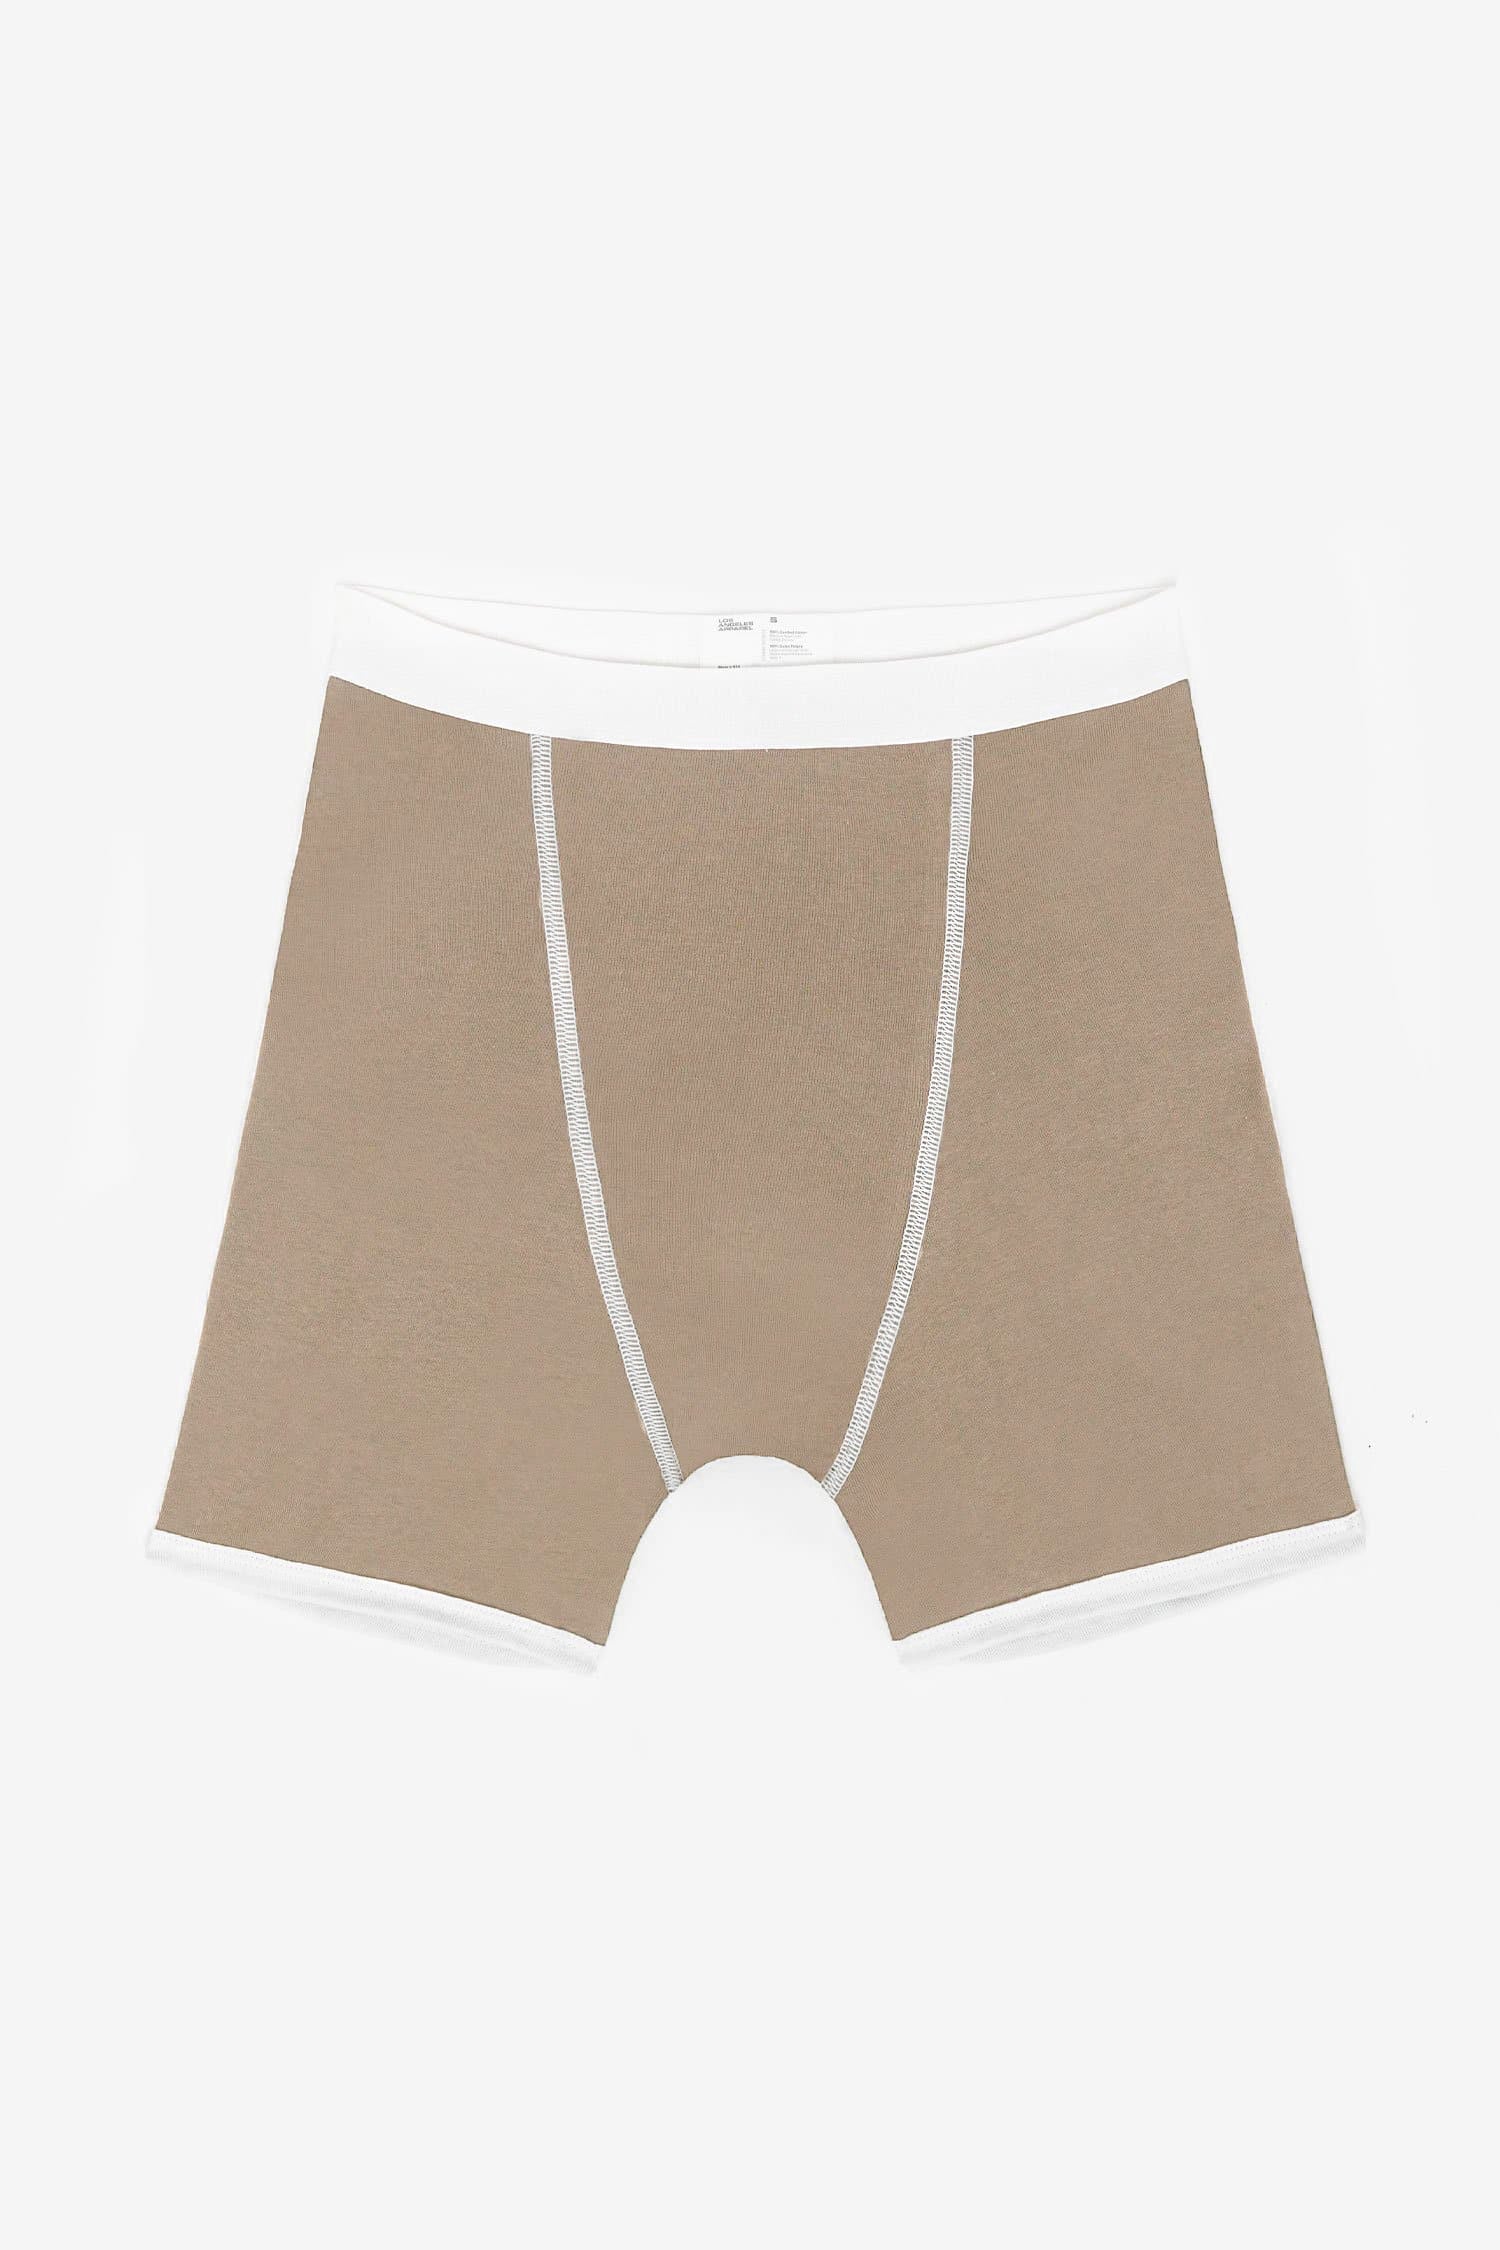 Buy American Apparel Unisex Baby Rib Briefs/Underwear (M) (Red / White)  Online at desertcartTunisia